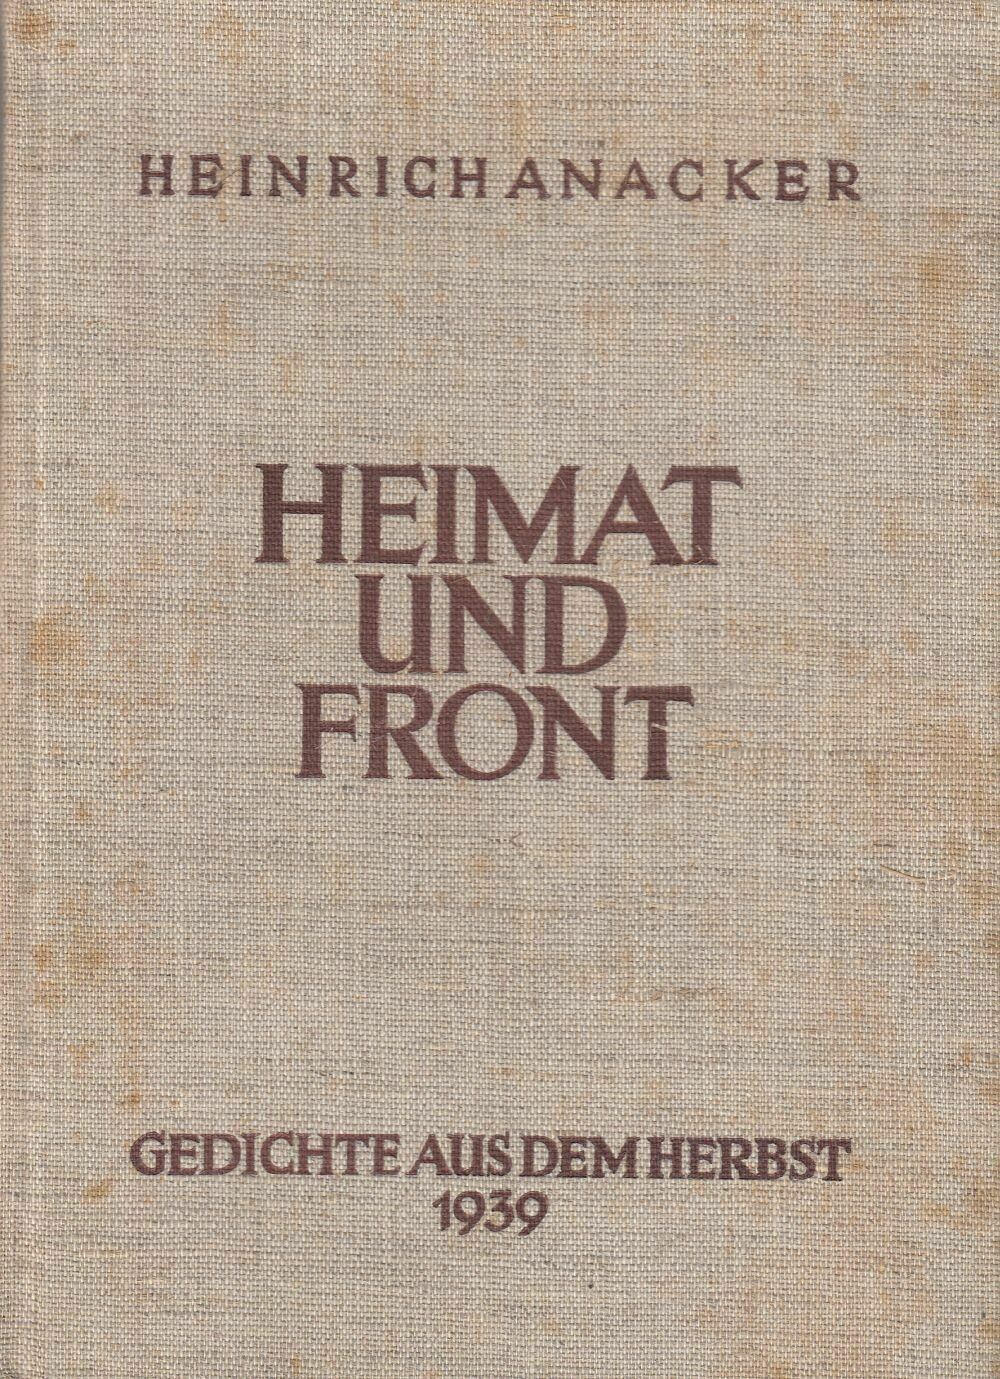 Anacker: Heimat und Front - Ganzleinenausgabe (2. Auflage) aus dem Jahr 1940